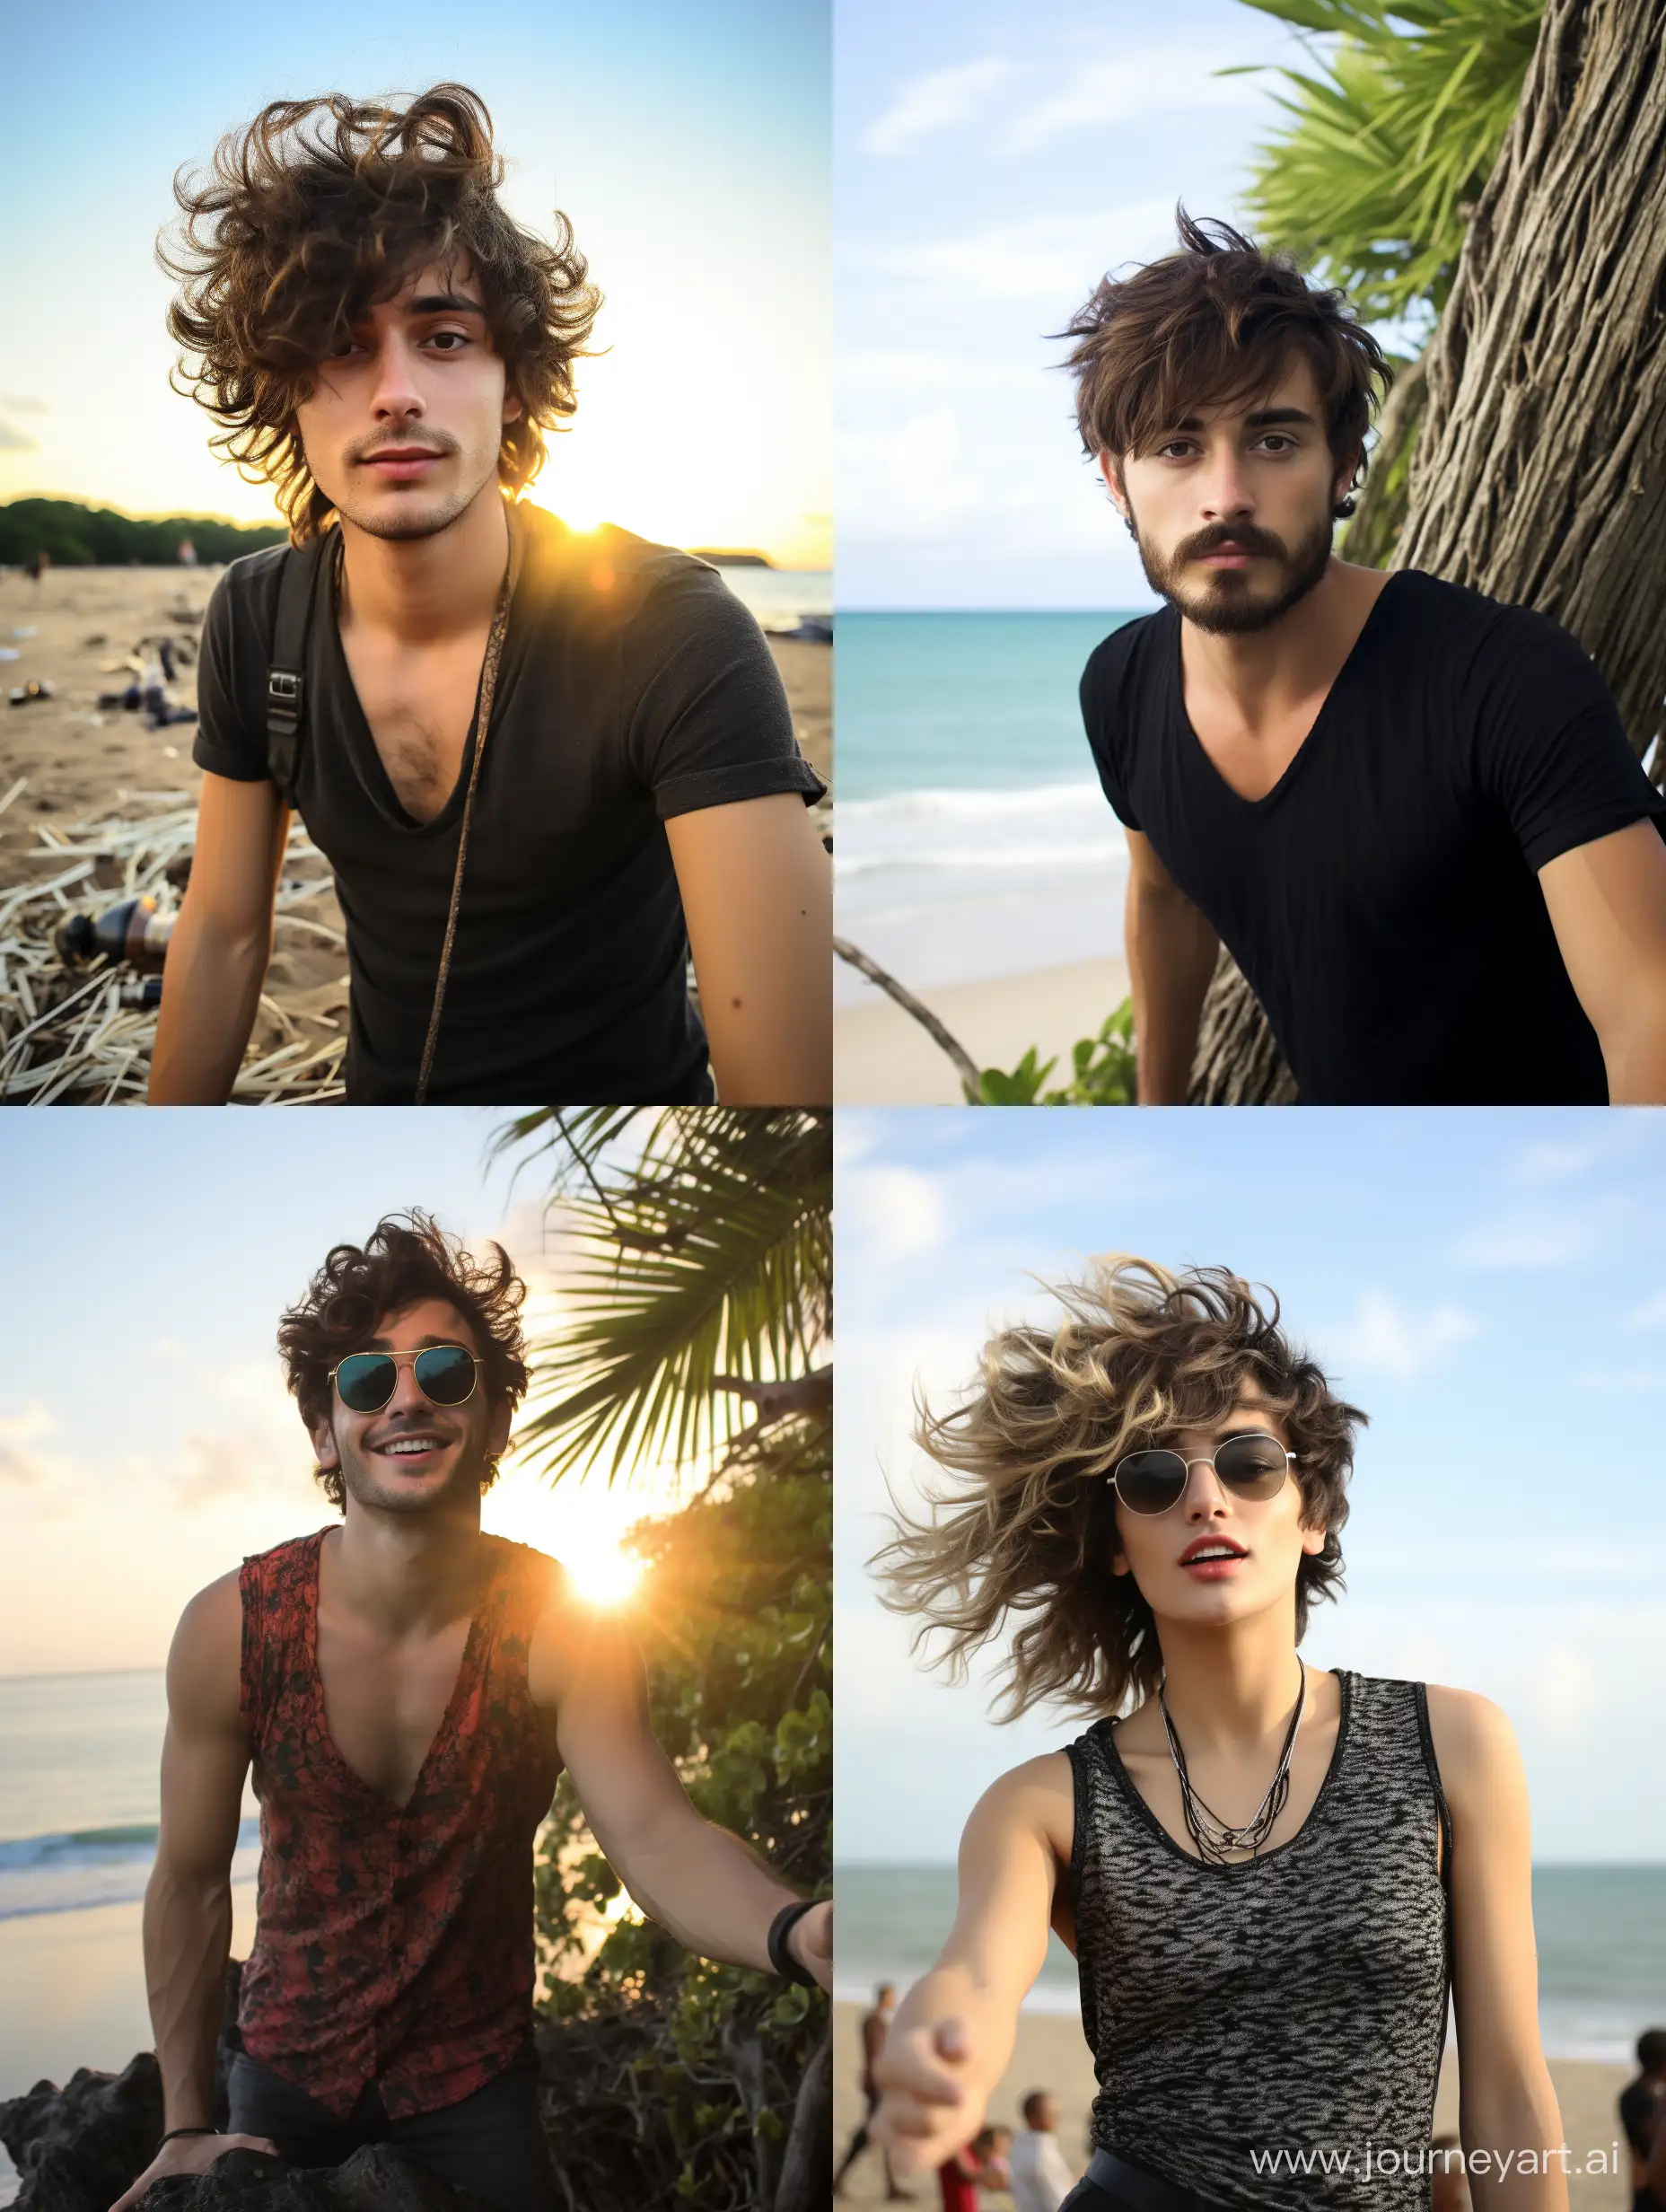 Beach-Selfie-Brazilian-25YearOld-Capturing-Ocean-Vibes